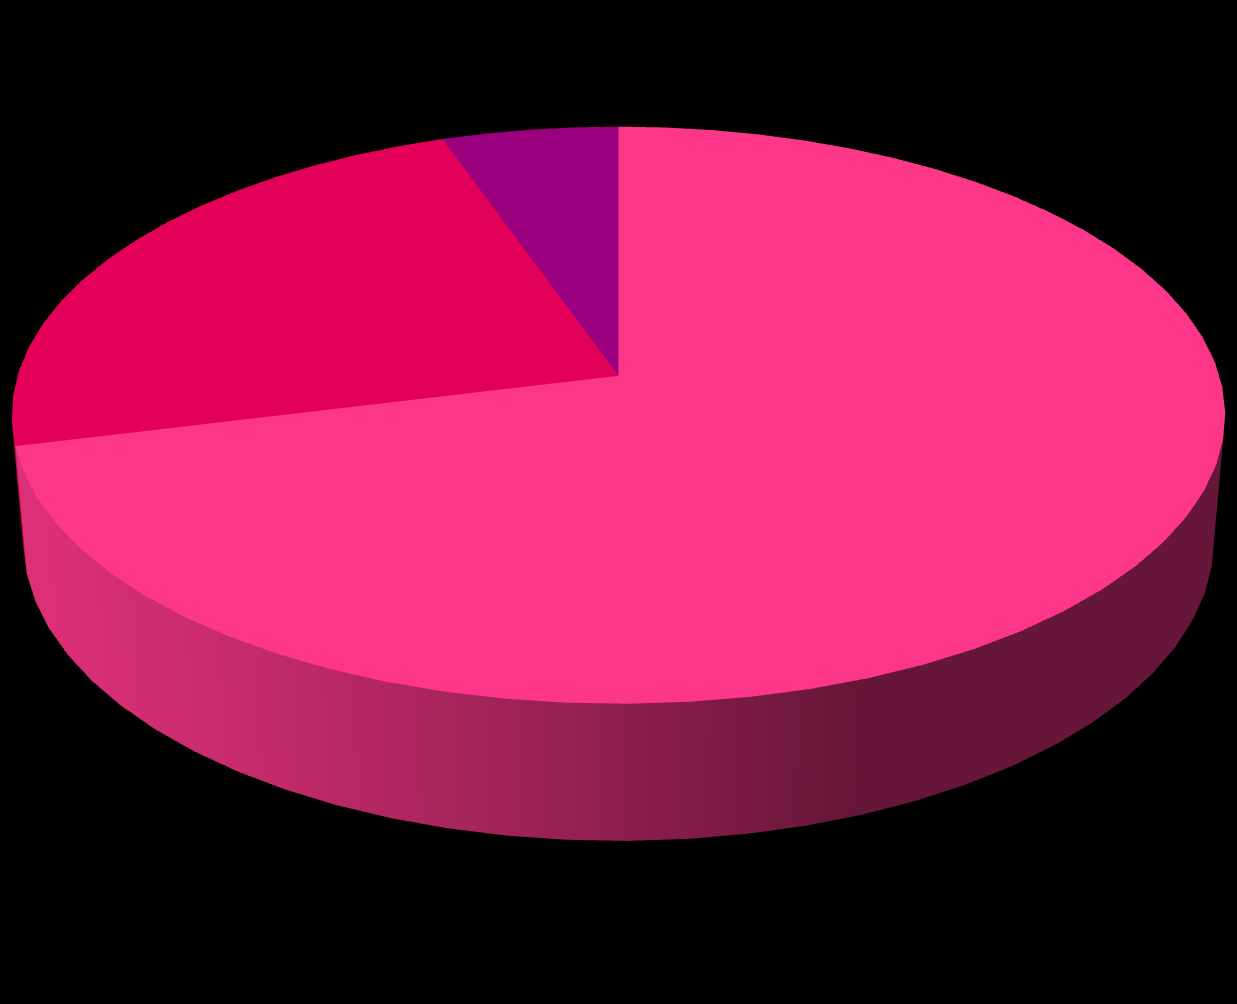 SCRUTINIO GIUGNO 2013 21% 6%